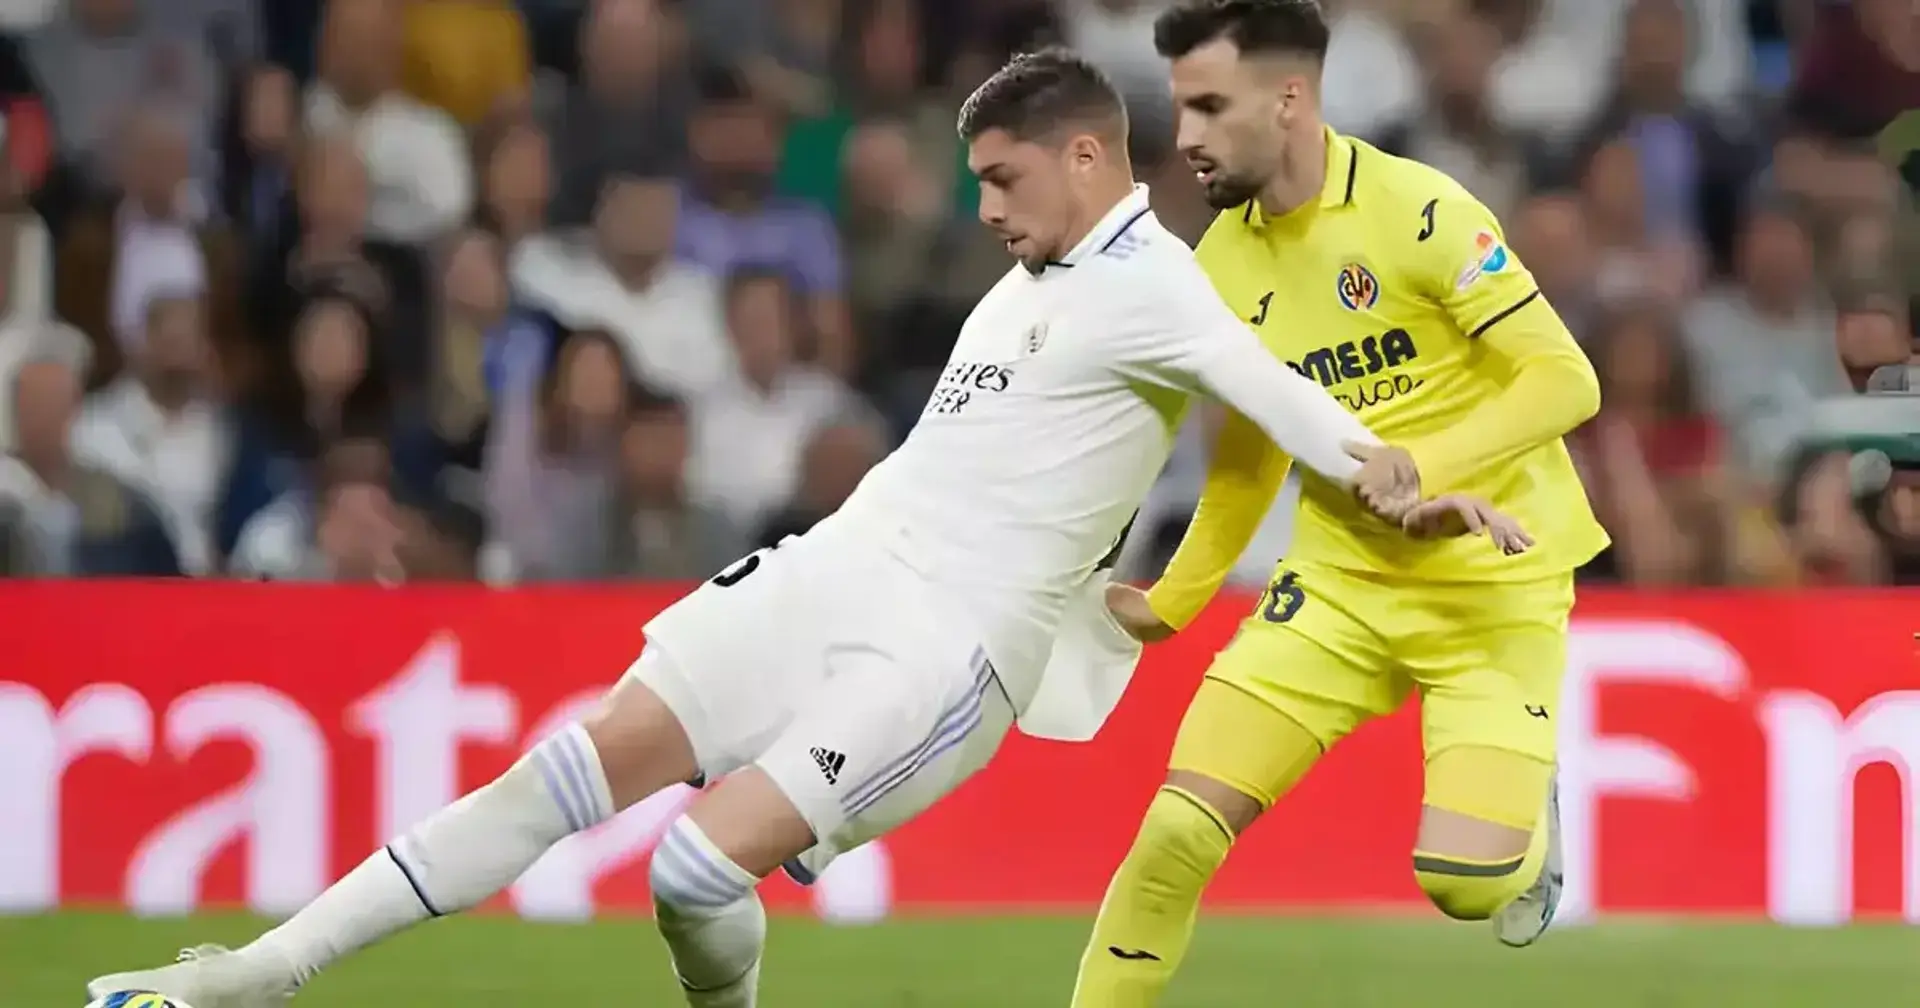 Real Madrid – Villarreal: pronóstico y apuestas para el partido del 17 de diciembre